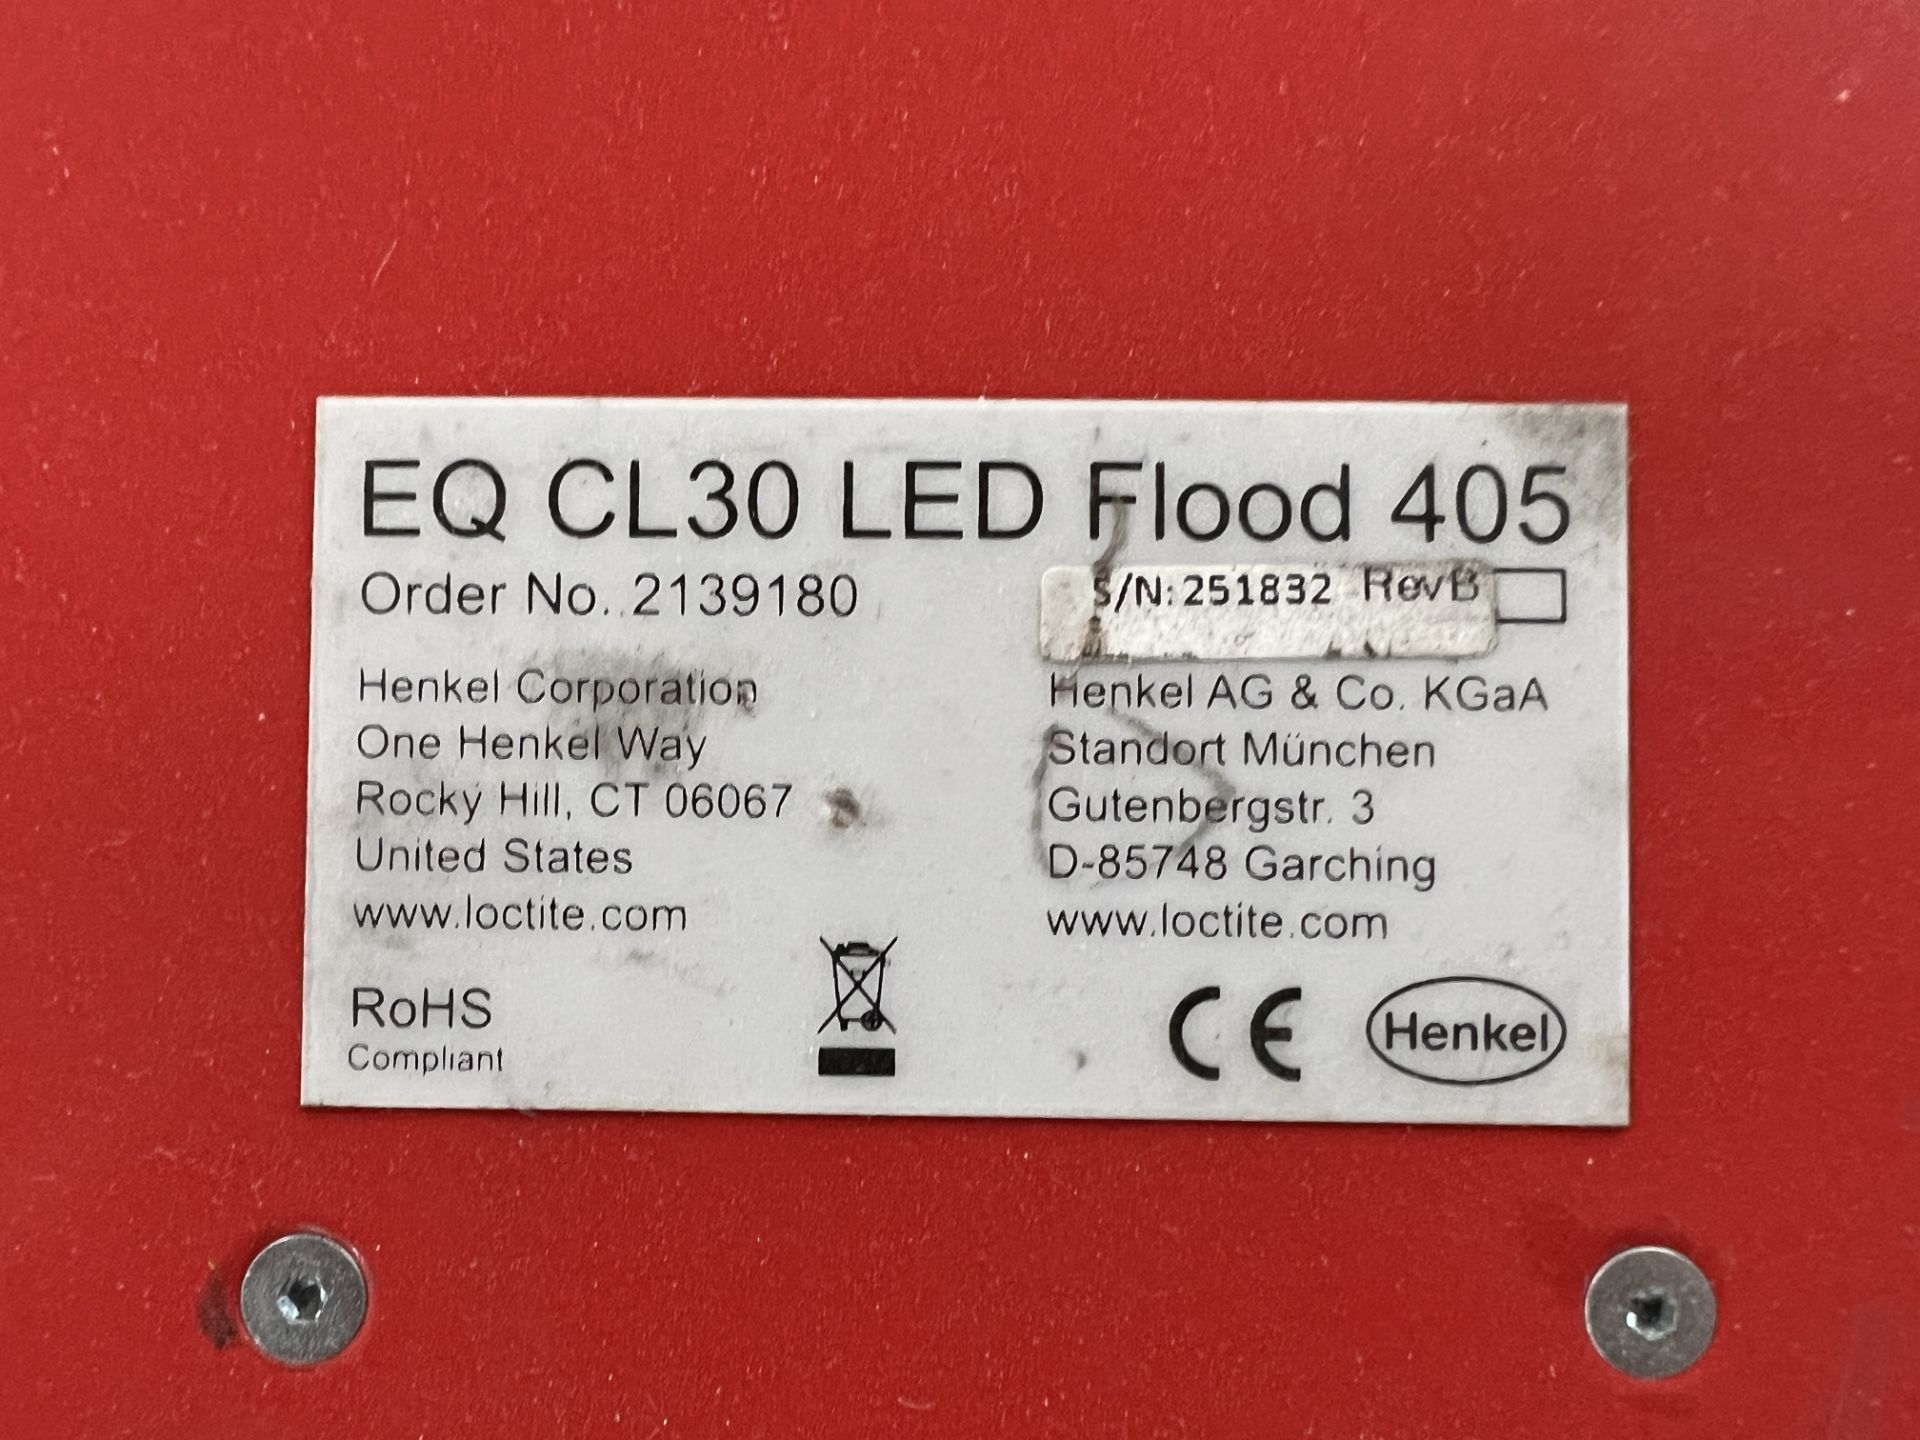 LOCTITE HENKEL EQ CL30 LED QUAD CONTROLLER; (3) LOCTITE HENKEL EQCL30 LED FLOOD 405 LIGHT - Image 2 of 4